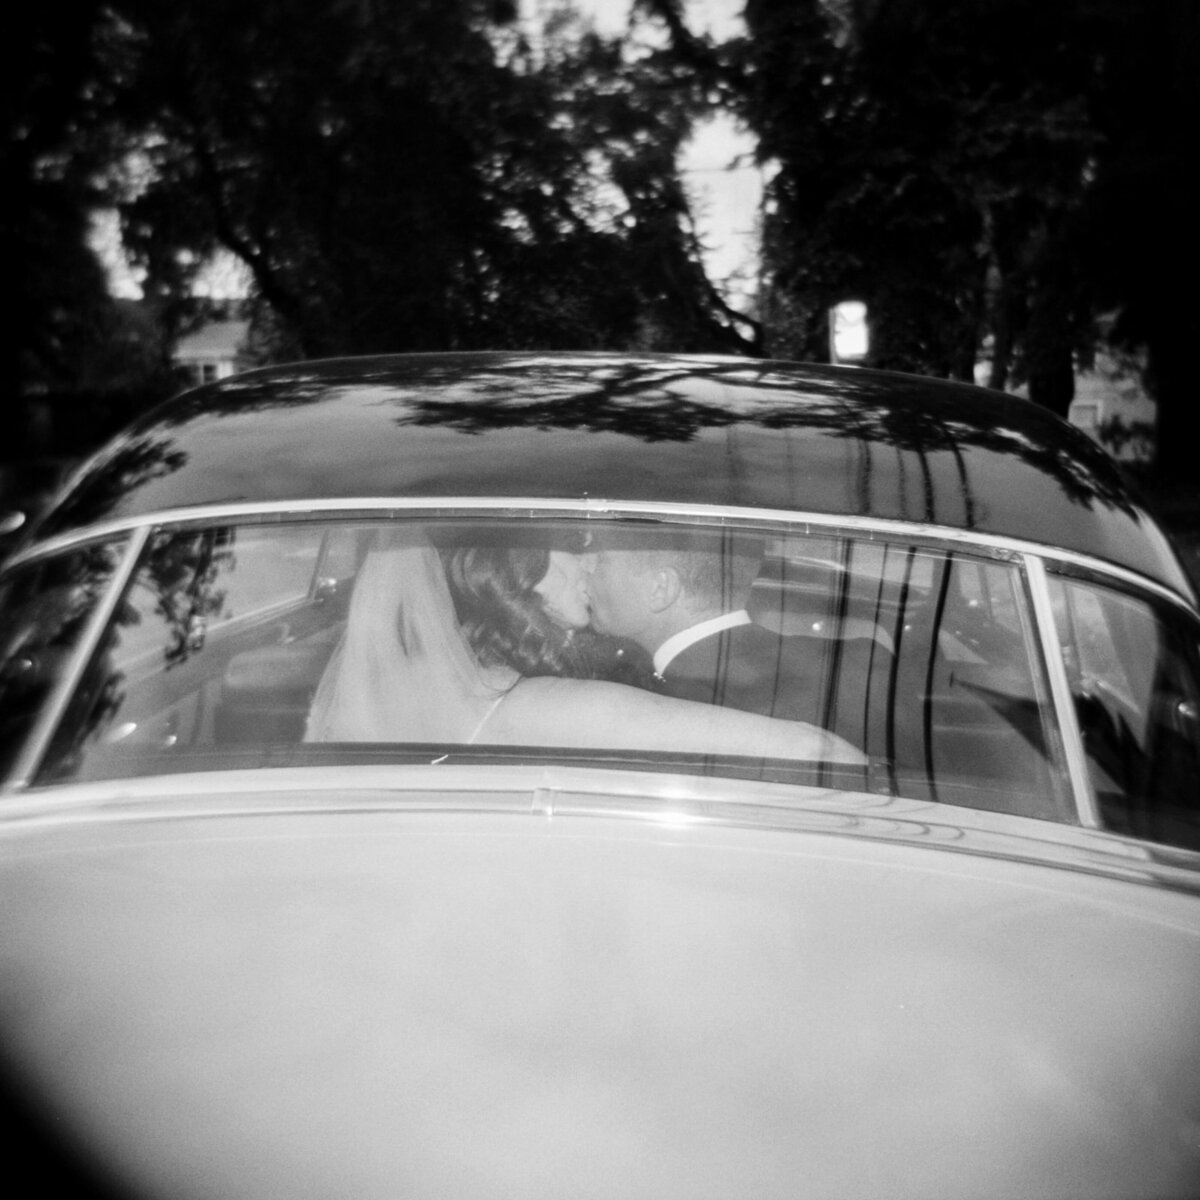 Bride and groom seen in the back window of wedding car at Halifax wedding, Nova Scotia